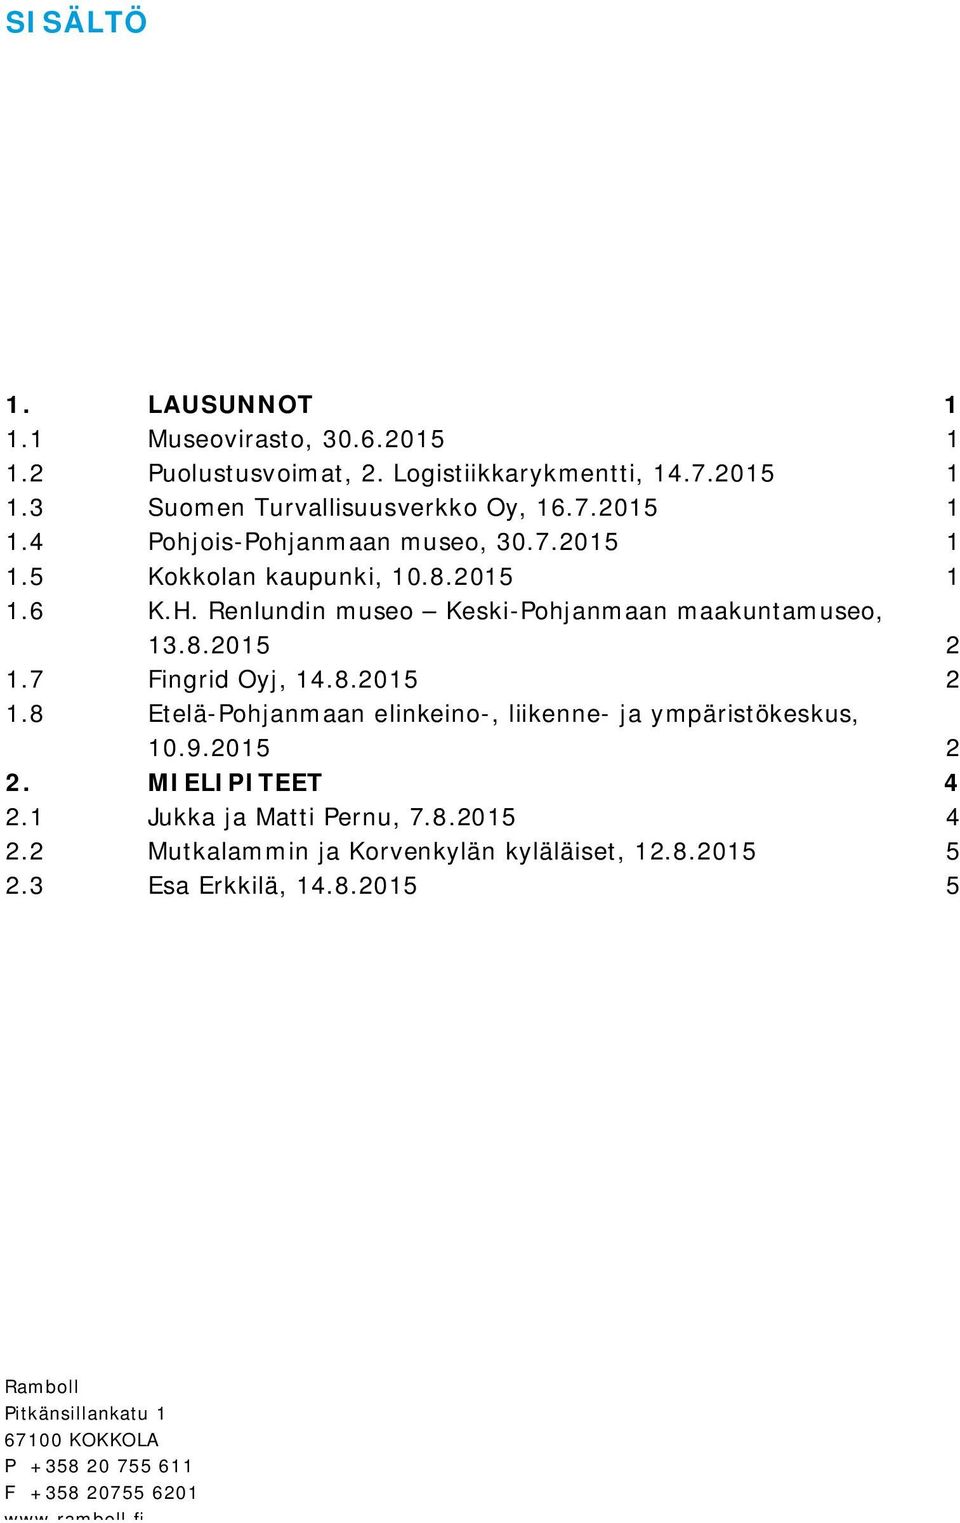 7 Fingrid Oyj, 14.8.2015 2 1.8 Etelä-Pohjanmaan elinkeino-, liikenne- ja ympäristökeskus, 10.9.2015 2 2. MIELIPITEET 4 2.1 Jukka ja Matti Pernu, 7.8.2015 4 2.